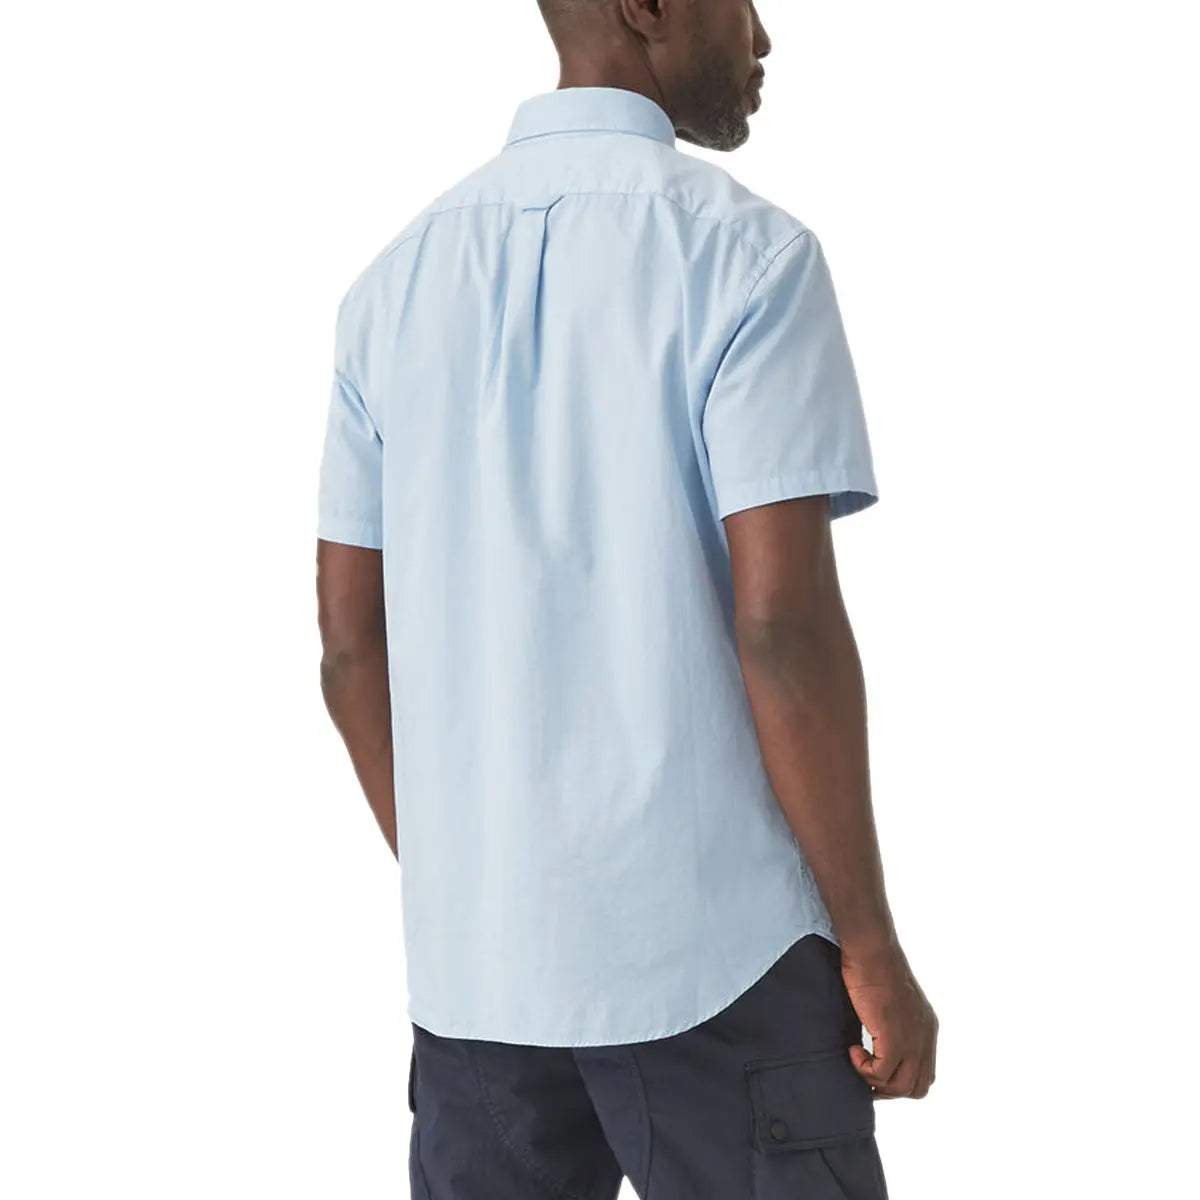 Sky Blue ‘Pitch’ Cotton Twill Short Sleeved Shirt  Belstaff   